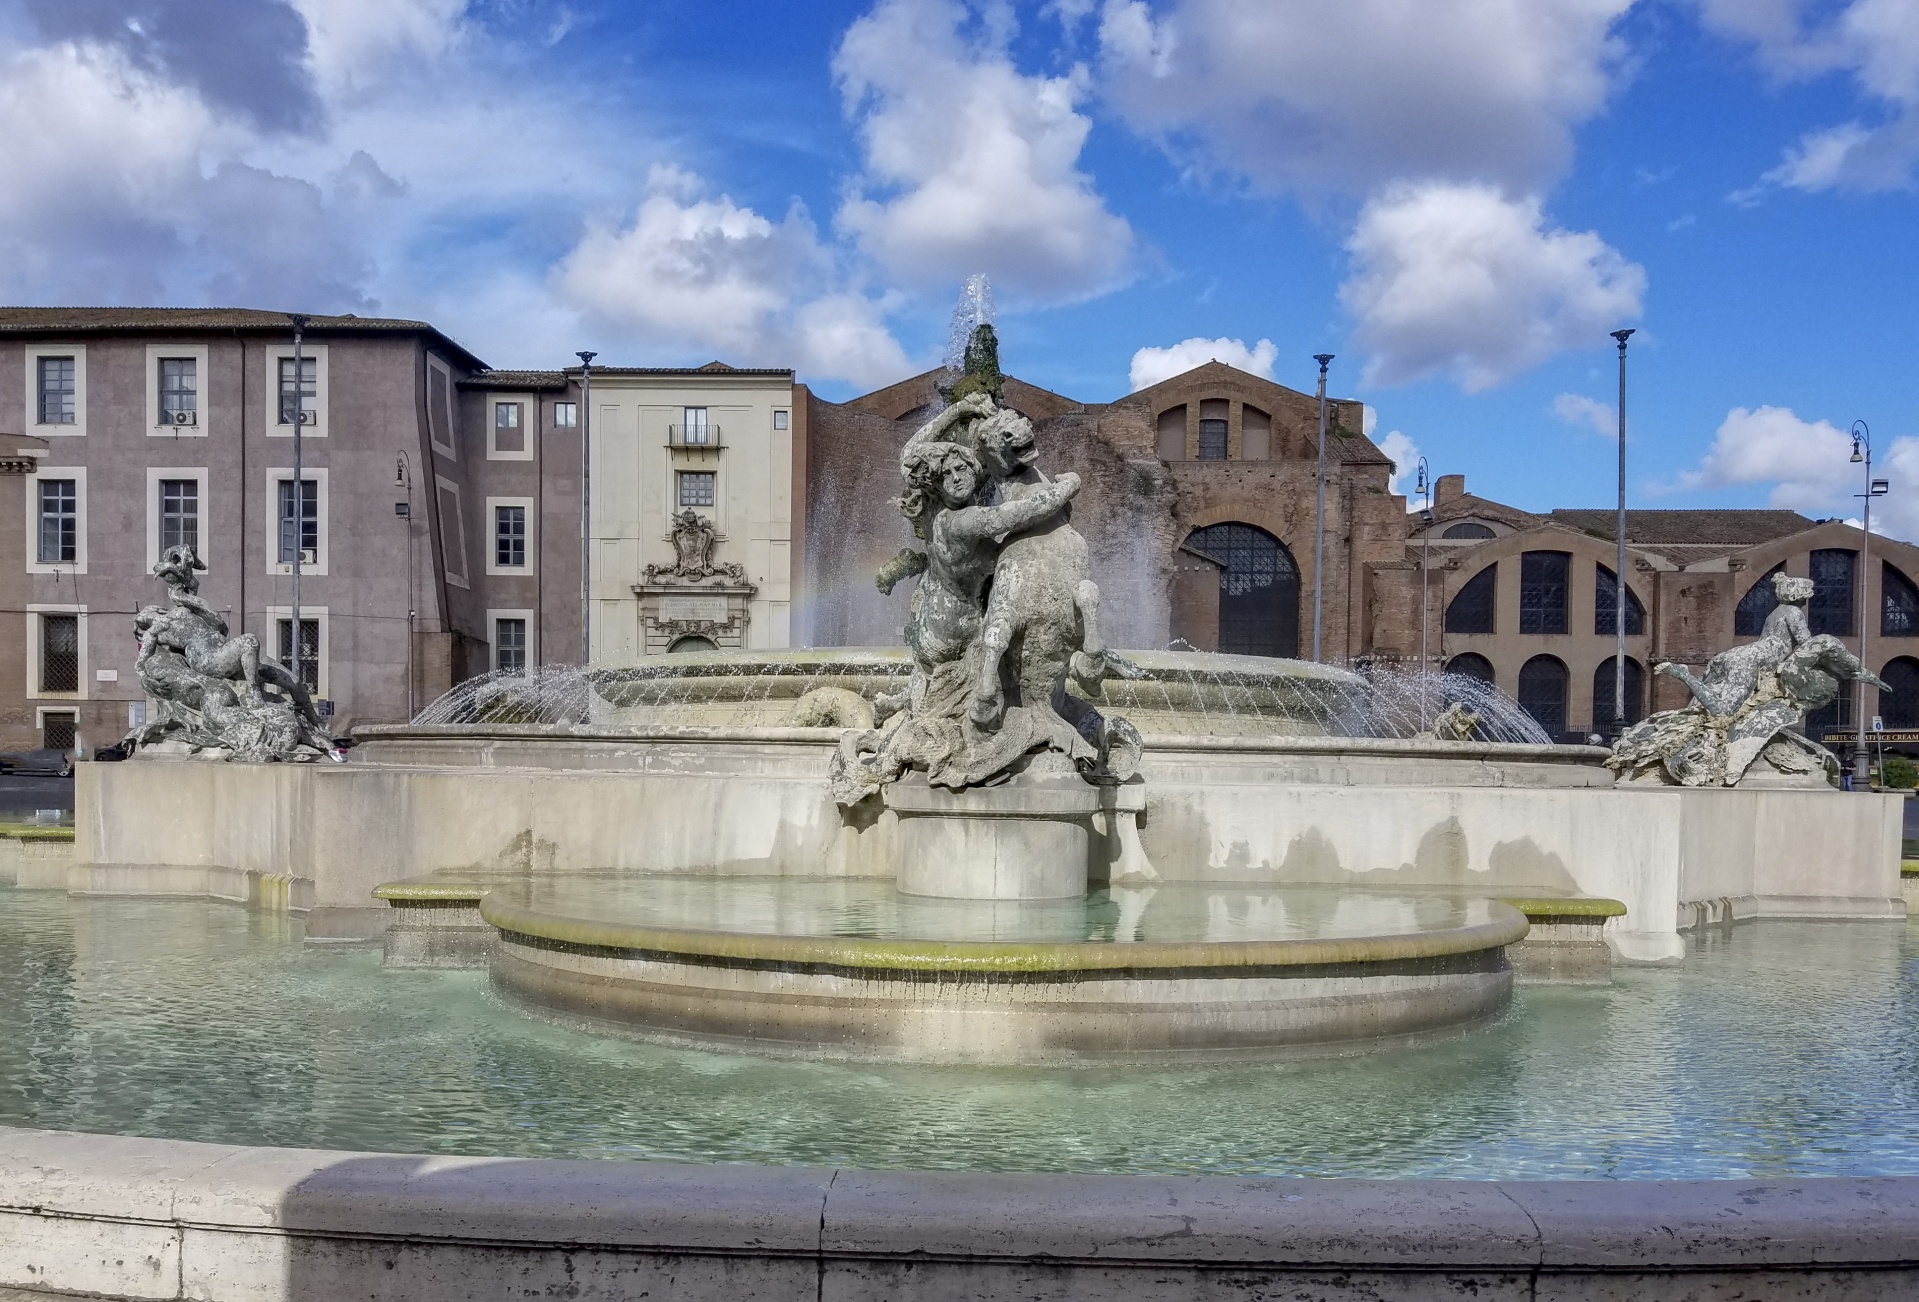 罗马喷泉